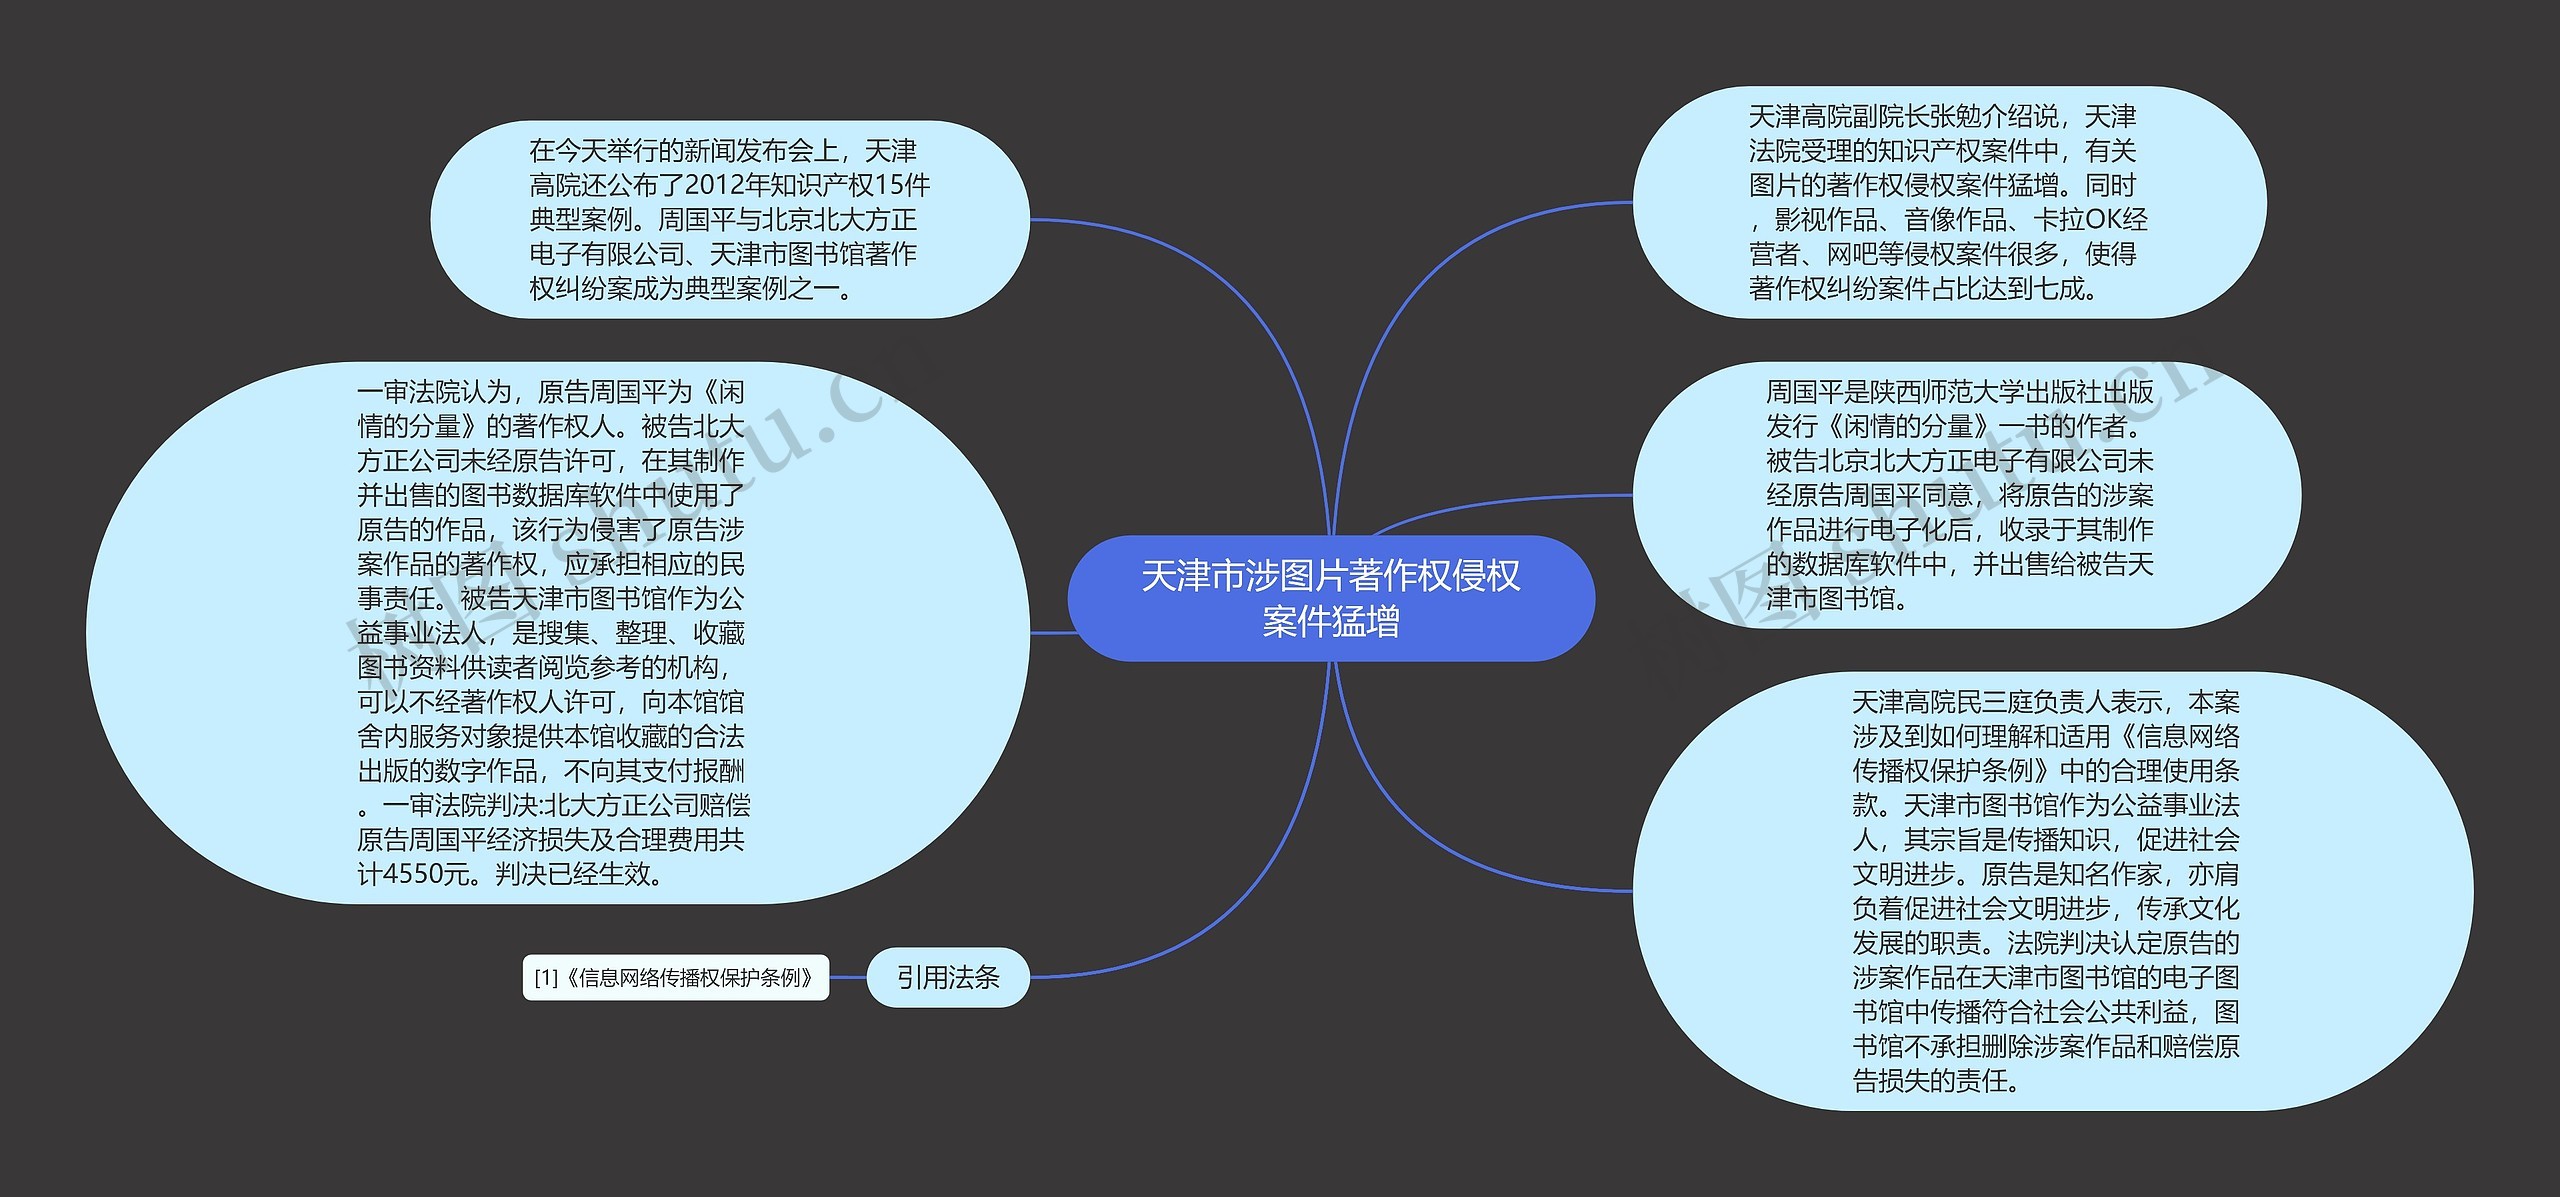 天津市涉图片著作权侵权案件猛增